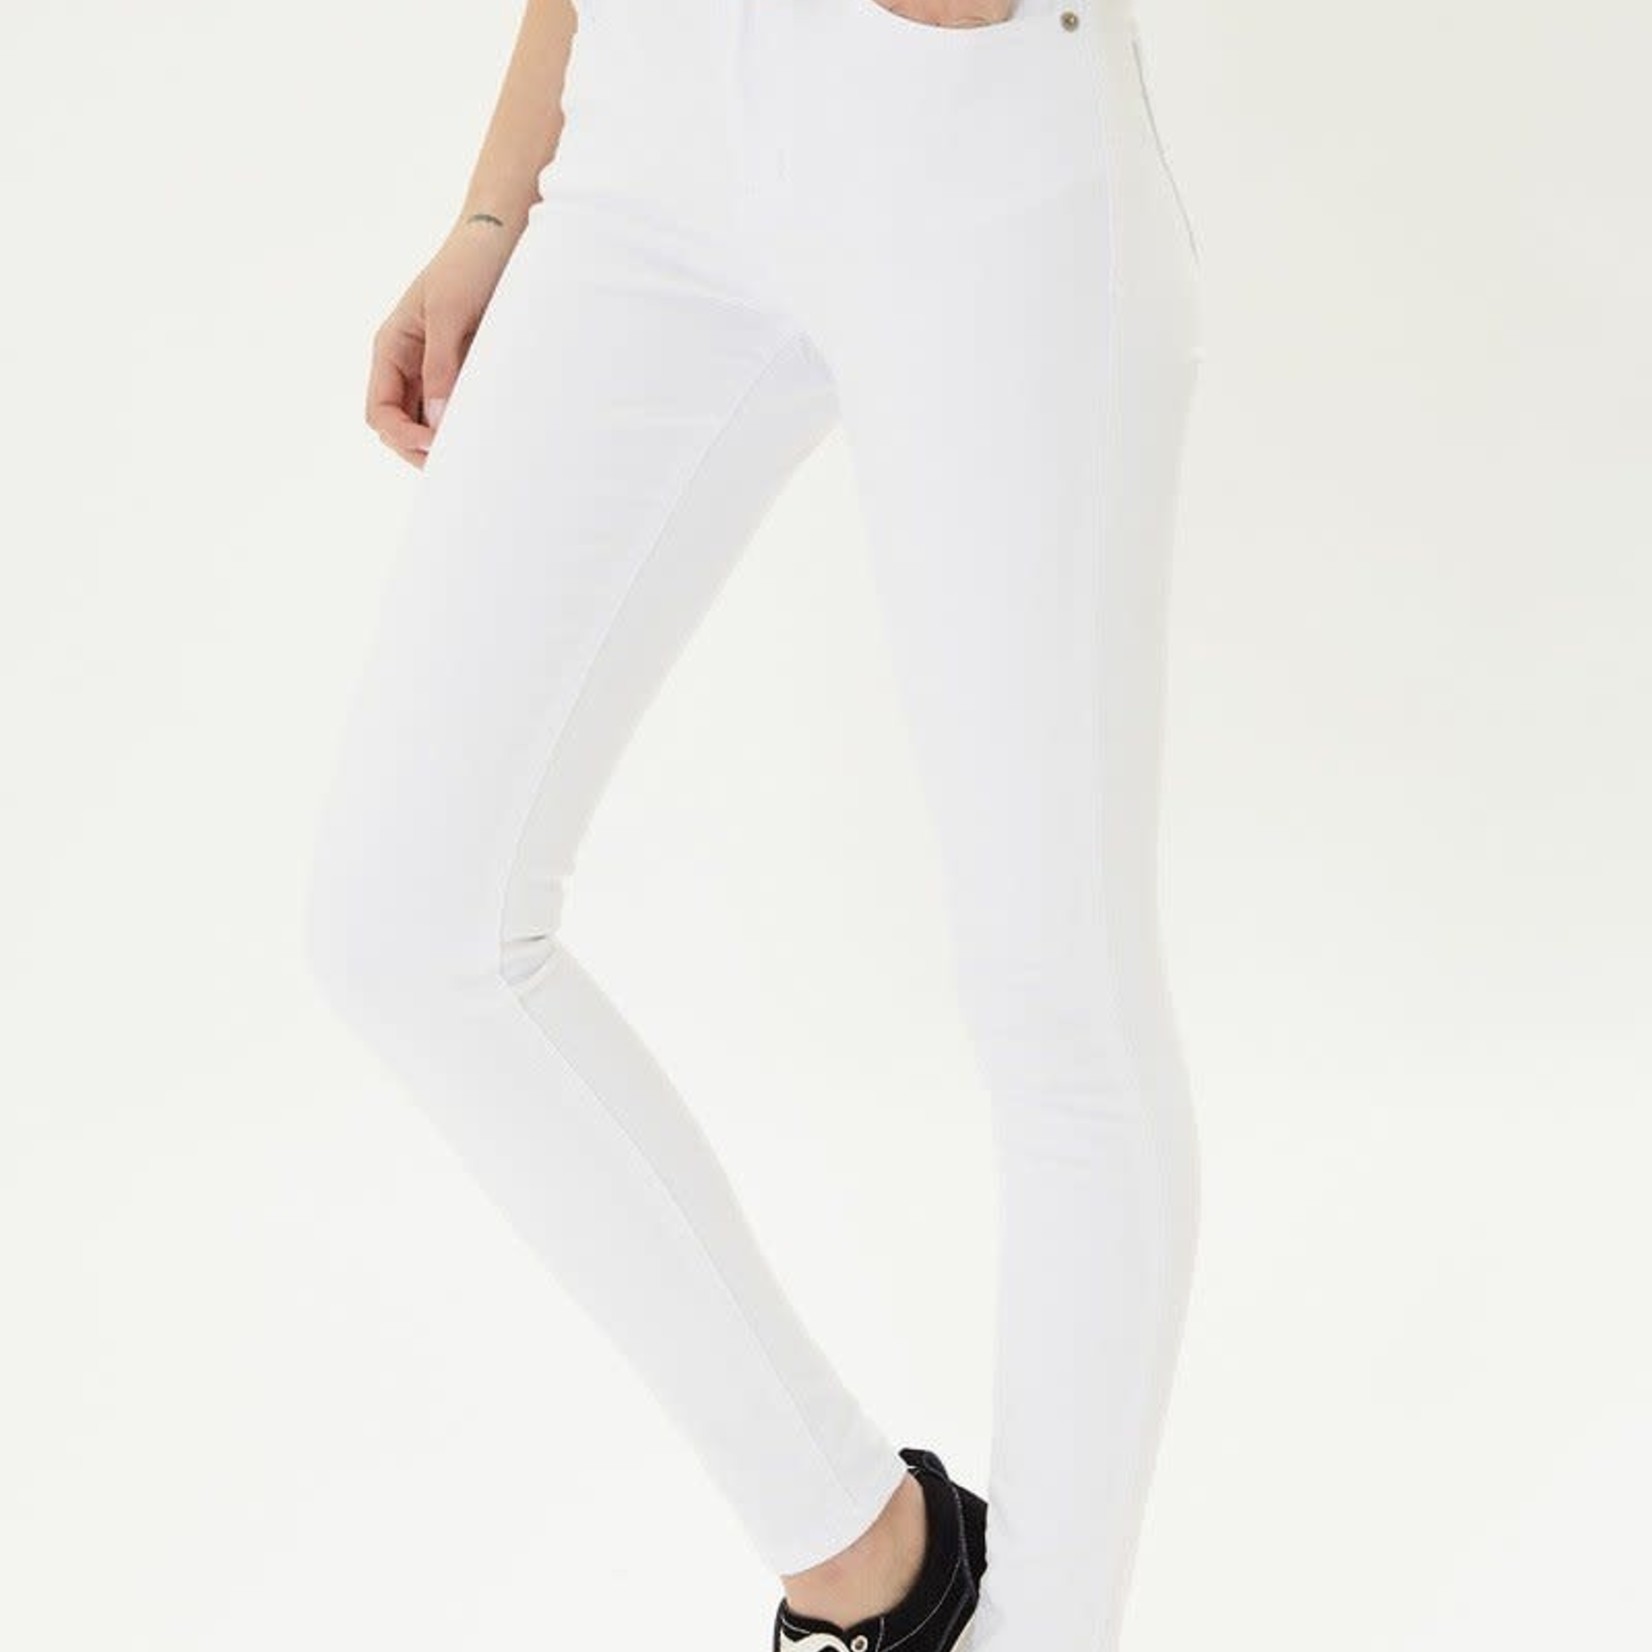 Kancan High Rise Super Skinny White Jeans